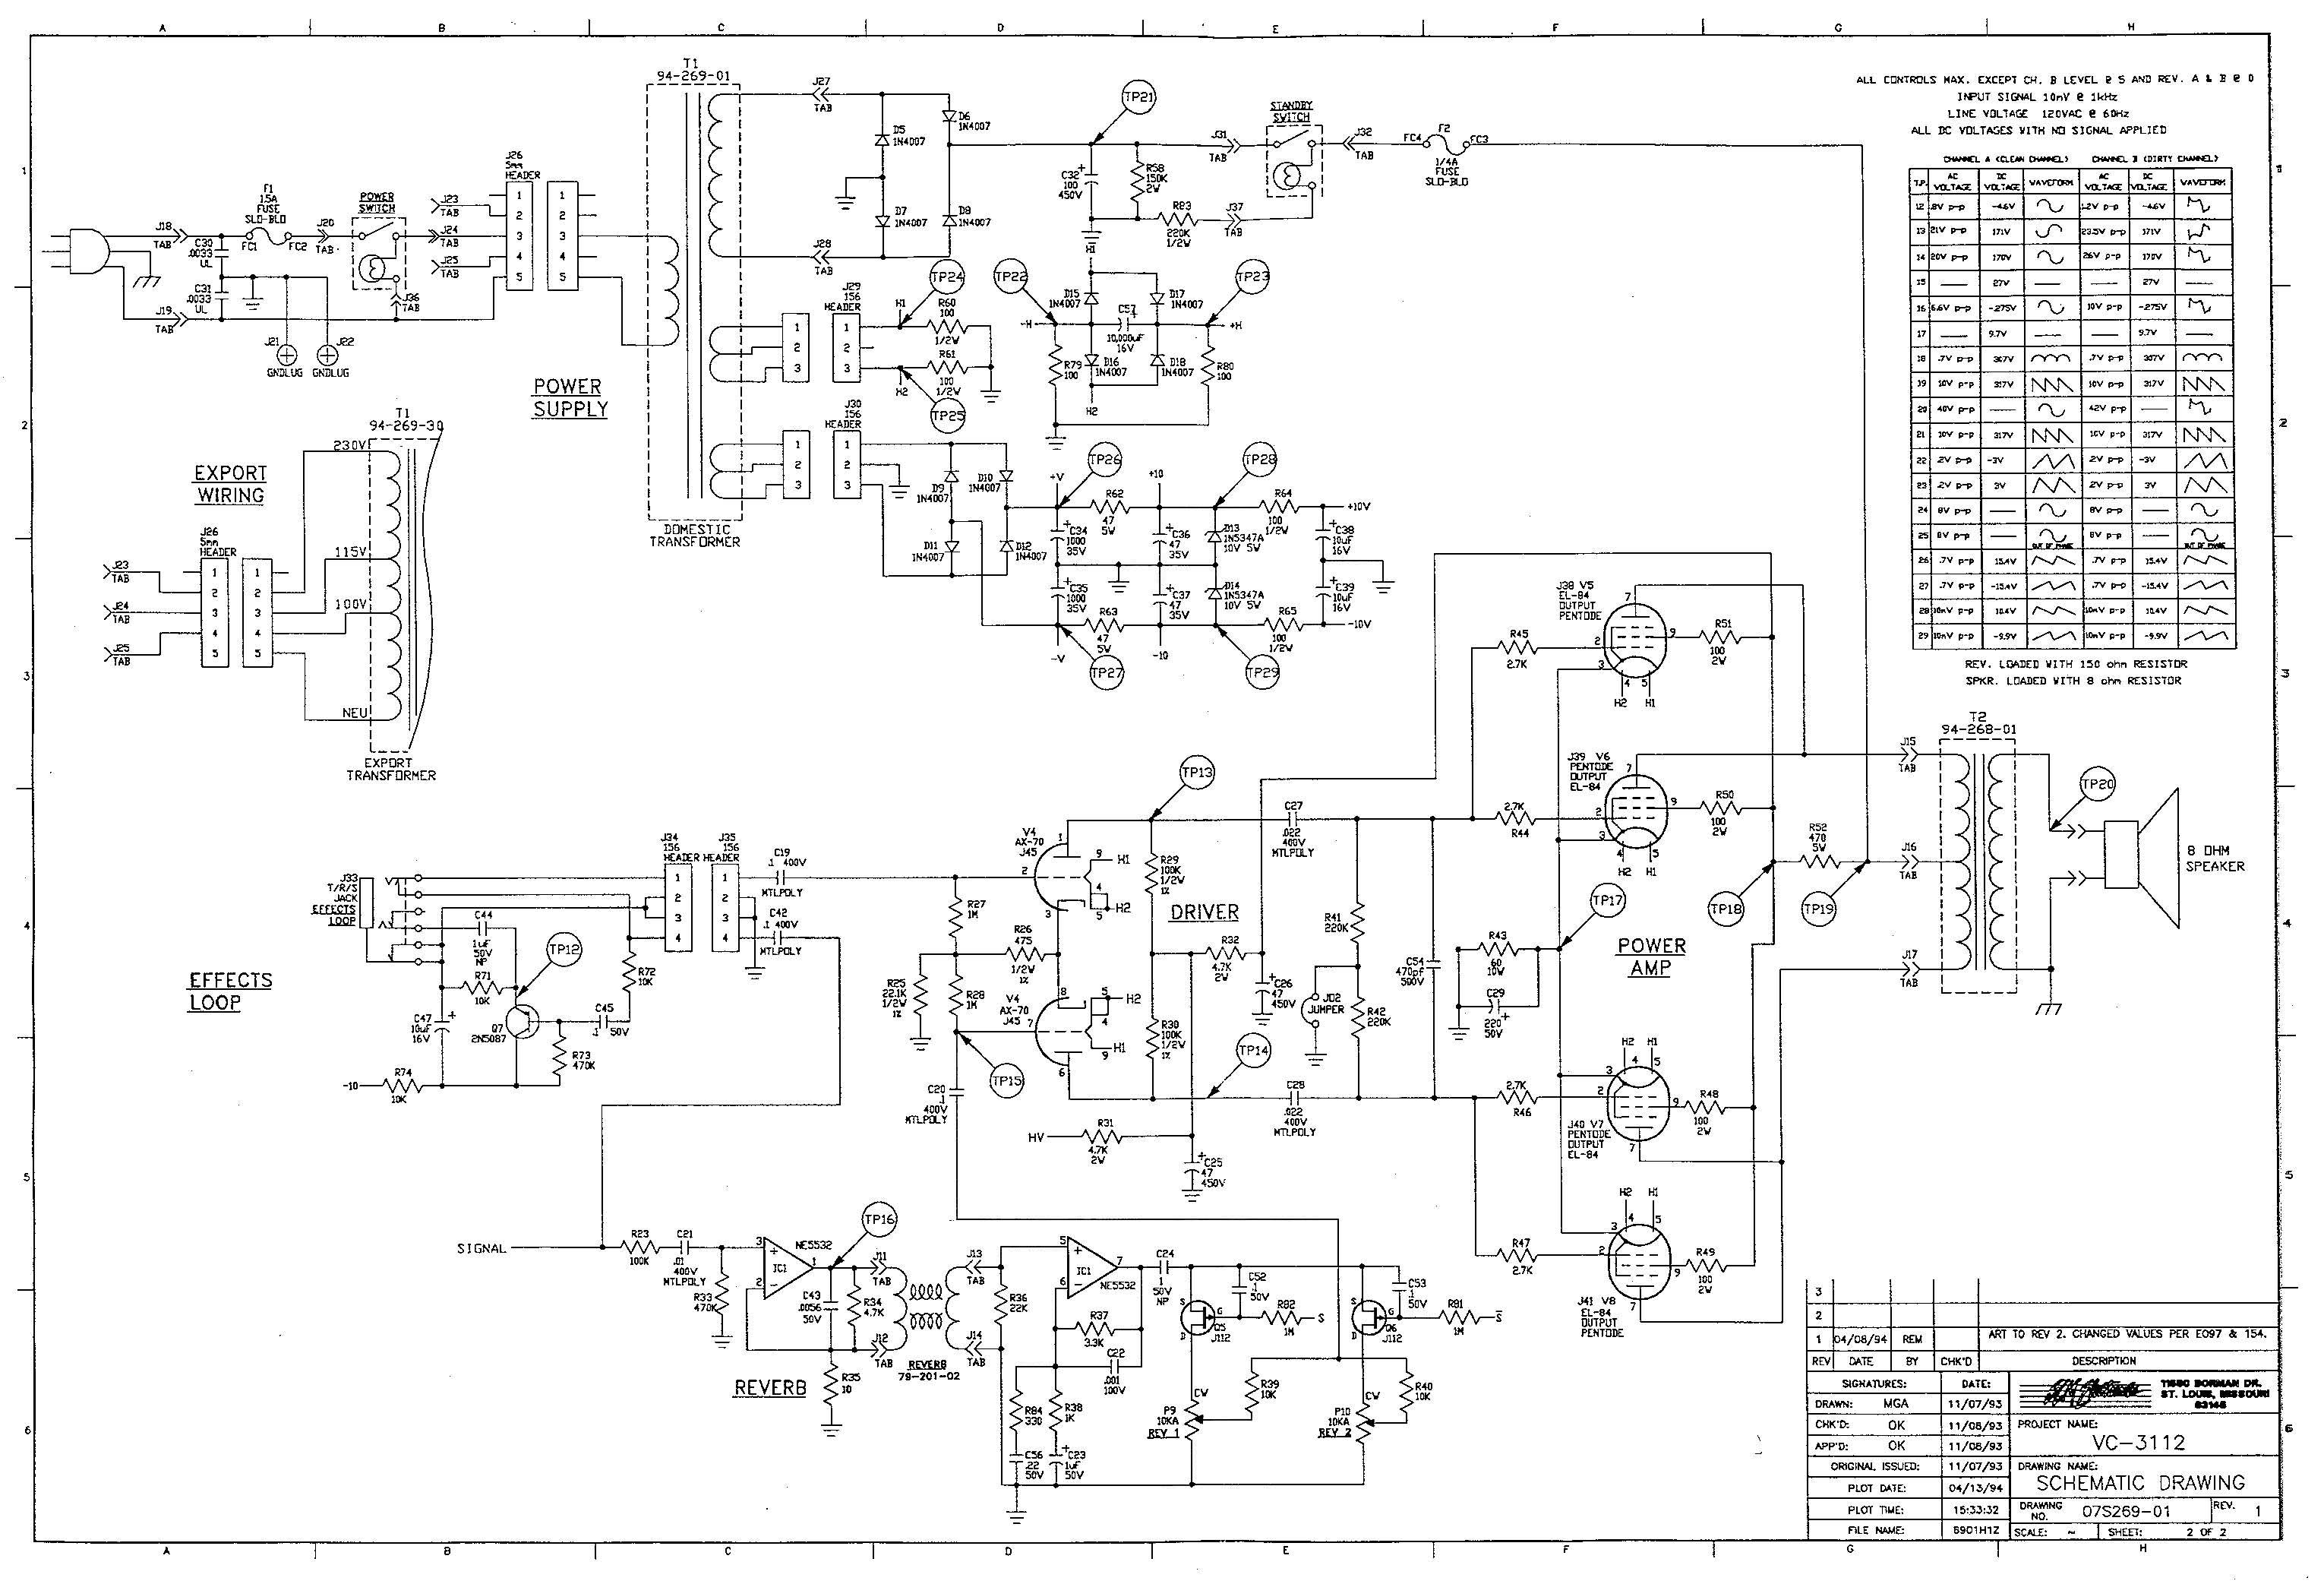 Схема Crate - VC-3112 Power Amp